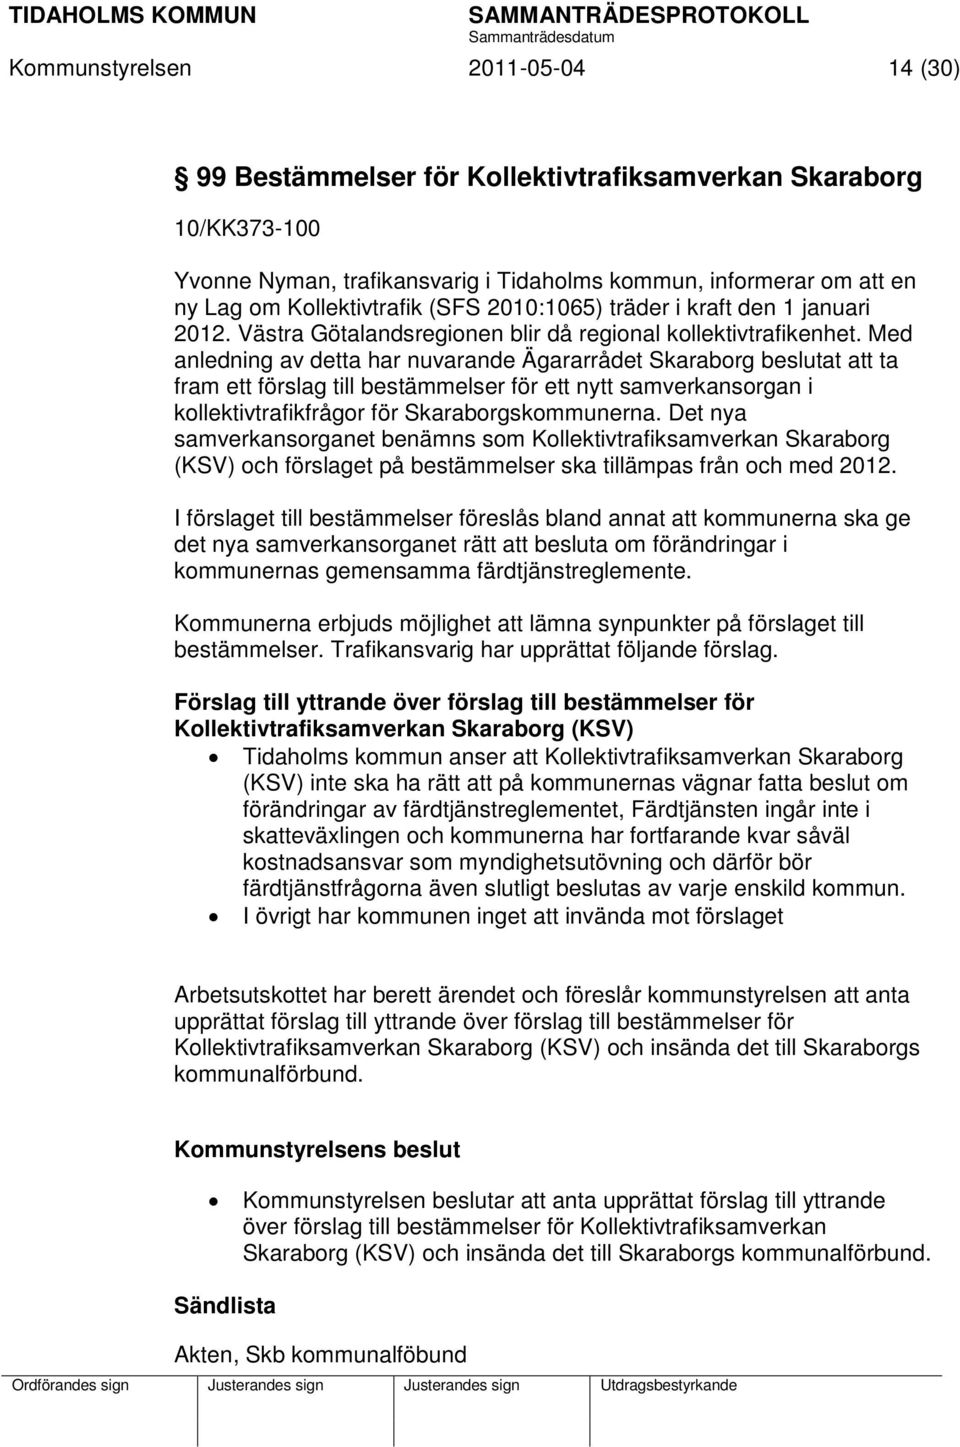 Med anledning av detta har nuvarande Ägararrådet Skaraborg beslutat att ta fram ett förslag till bestämmelser för ett nytt samverkansorgan i kollektivtrafikfrågor för Skaraborgskommunerna.